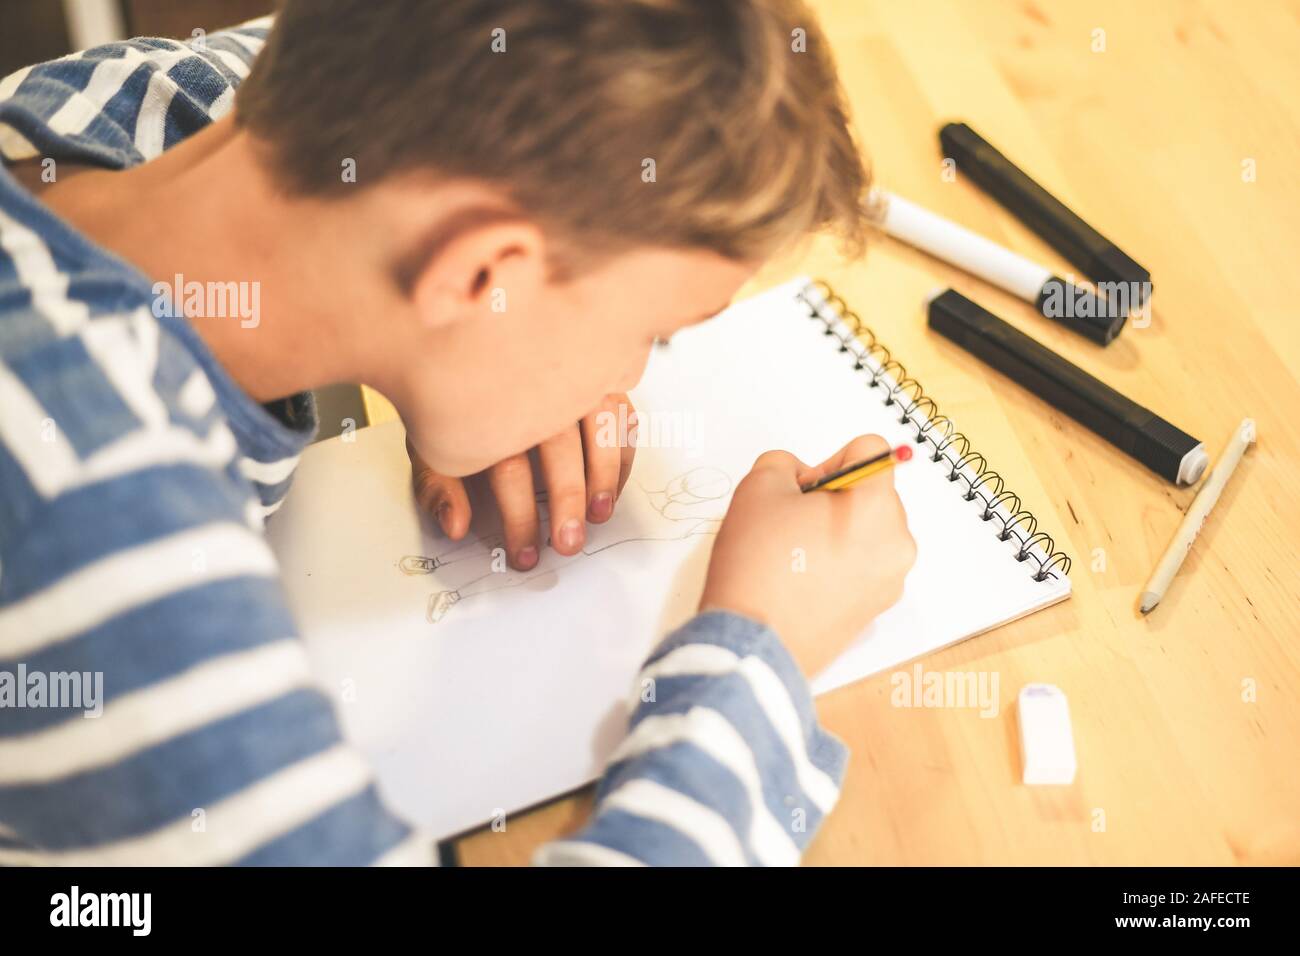 Vue rapprochée de l'encombrement avec un crayon. Boy doing homework écrit sur un papier. Kid tenir un crayon et dessiner un manga à la maison. Séance de dessin de l'adolescence Banque D'Images